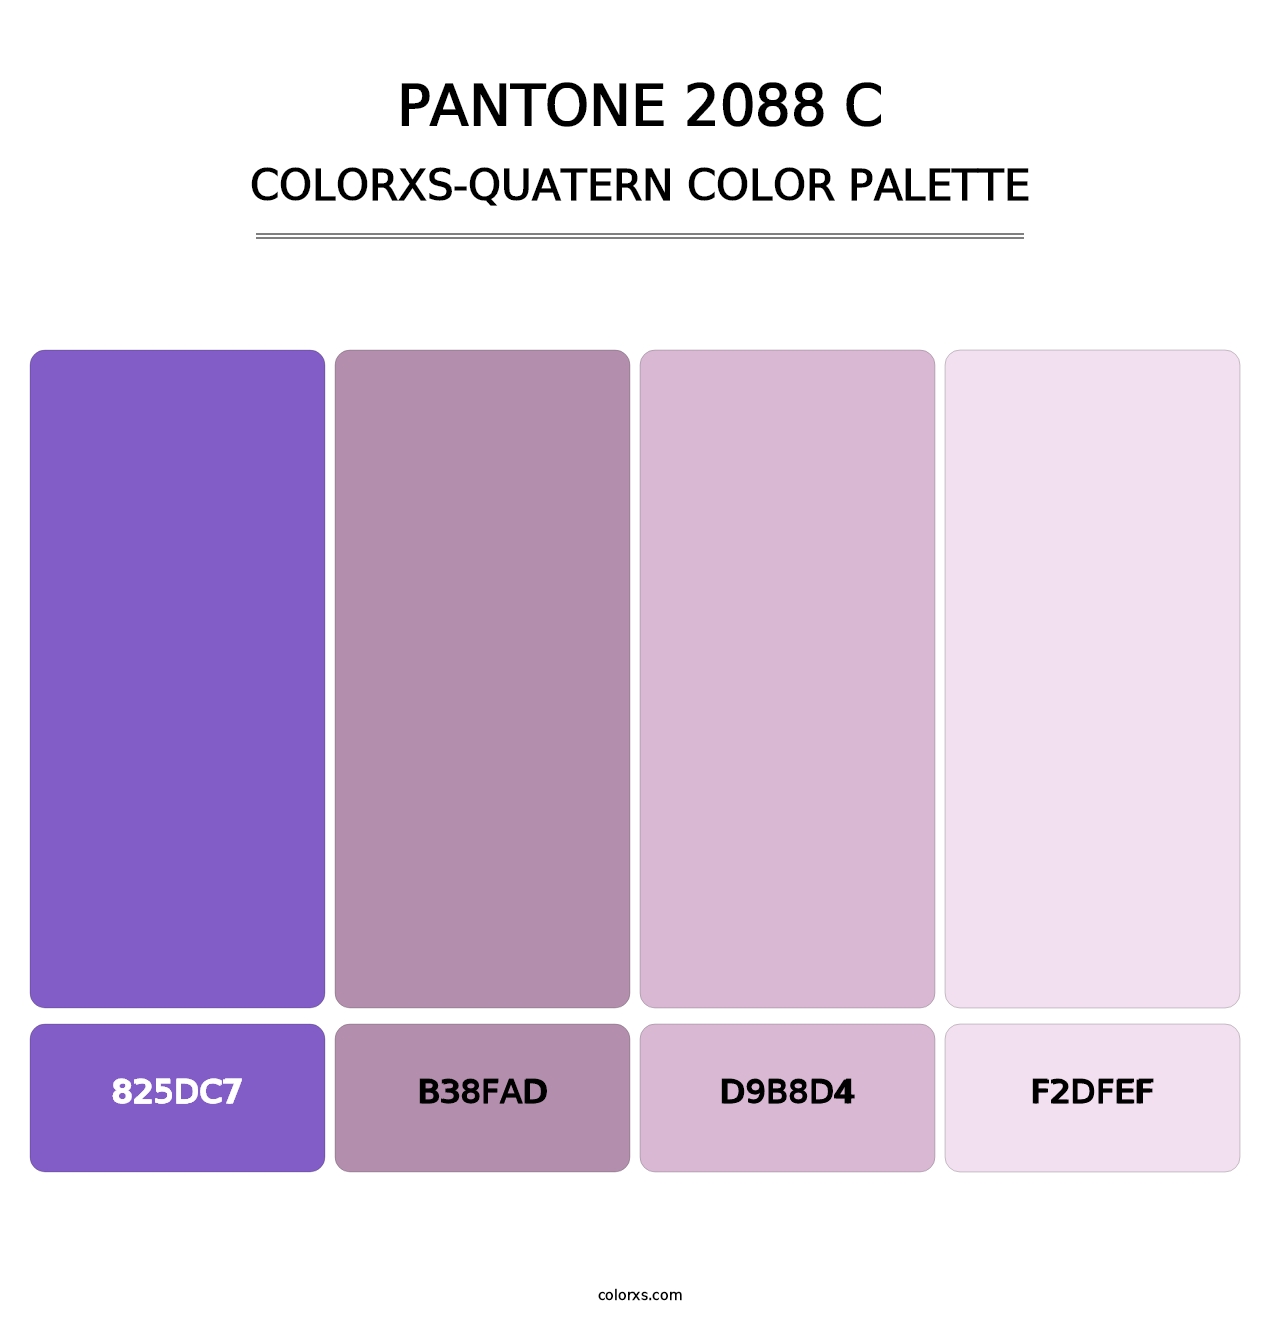 PANTONE 2088 C - Colorxs Quatern Palette